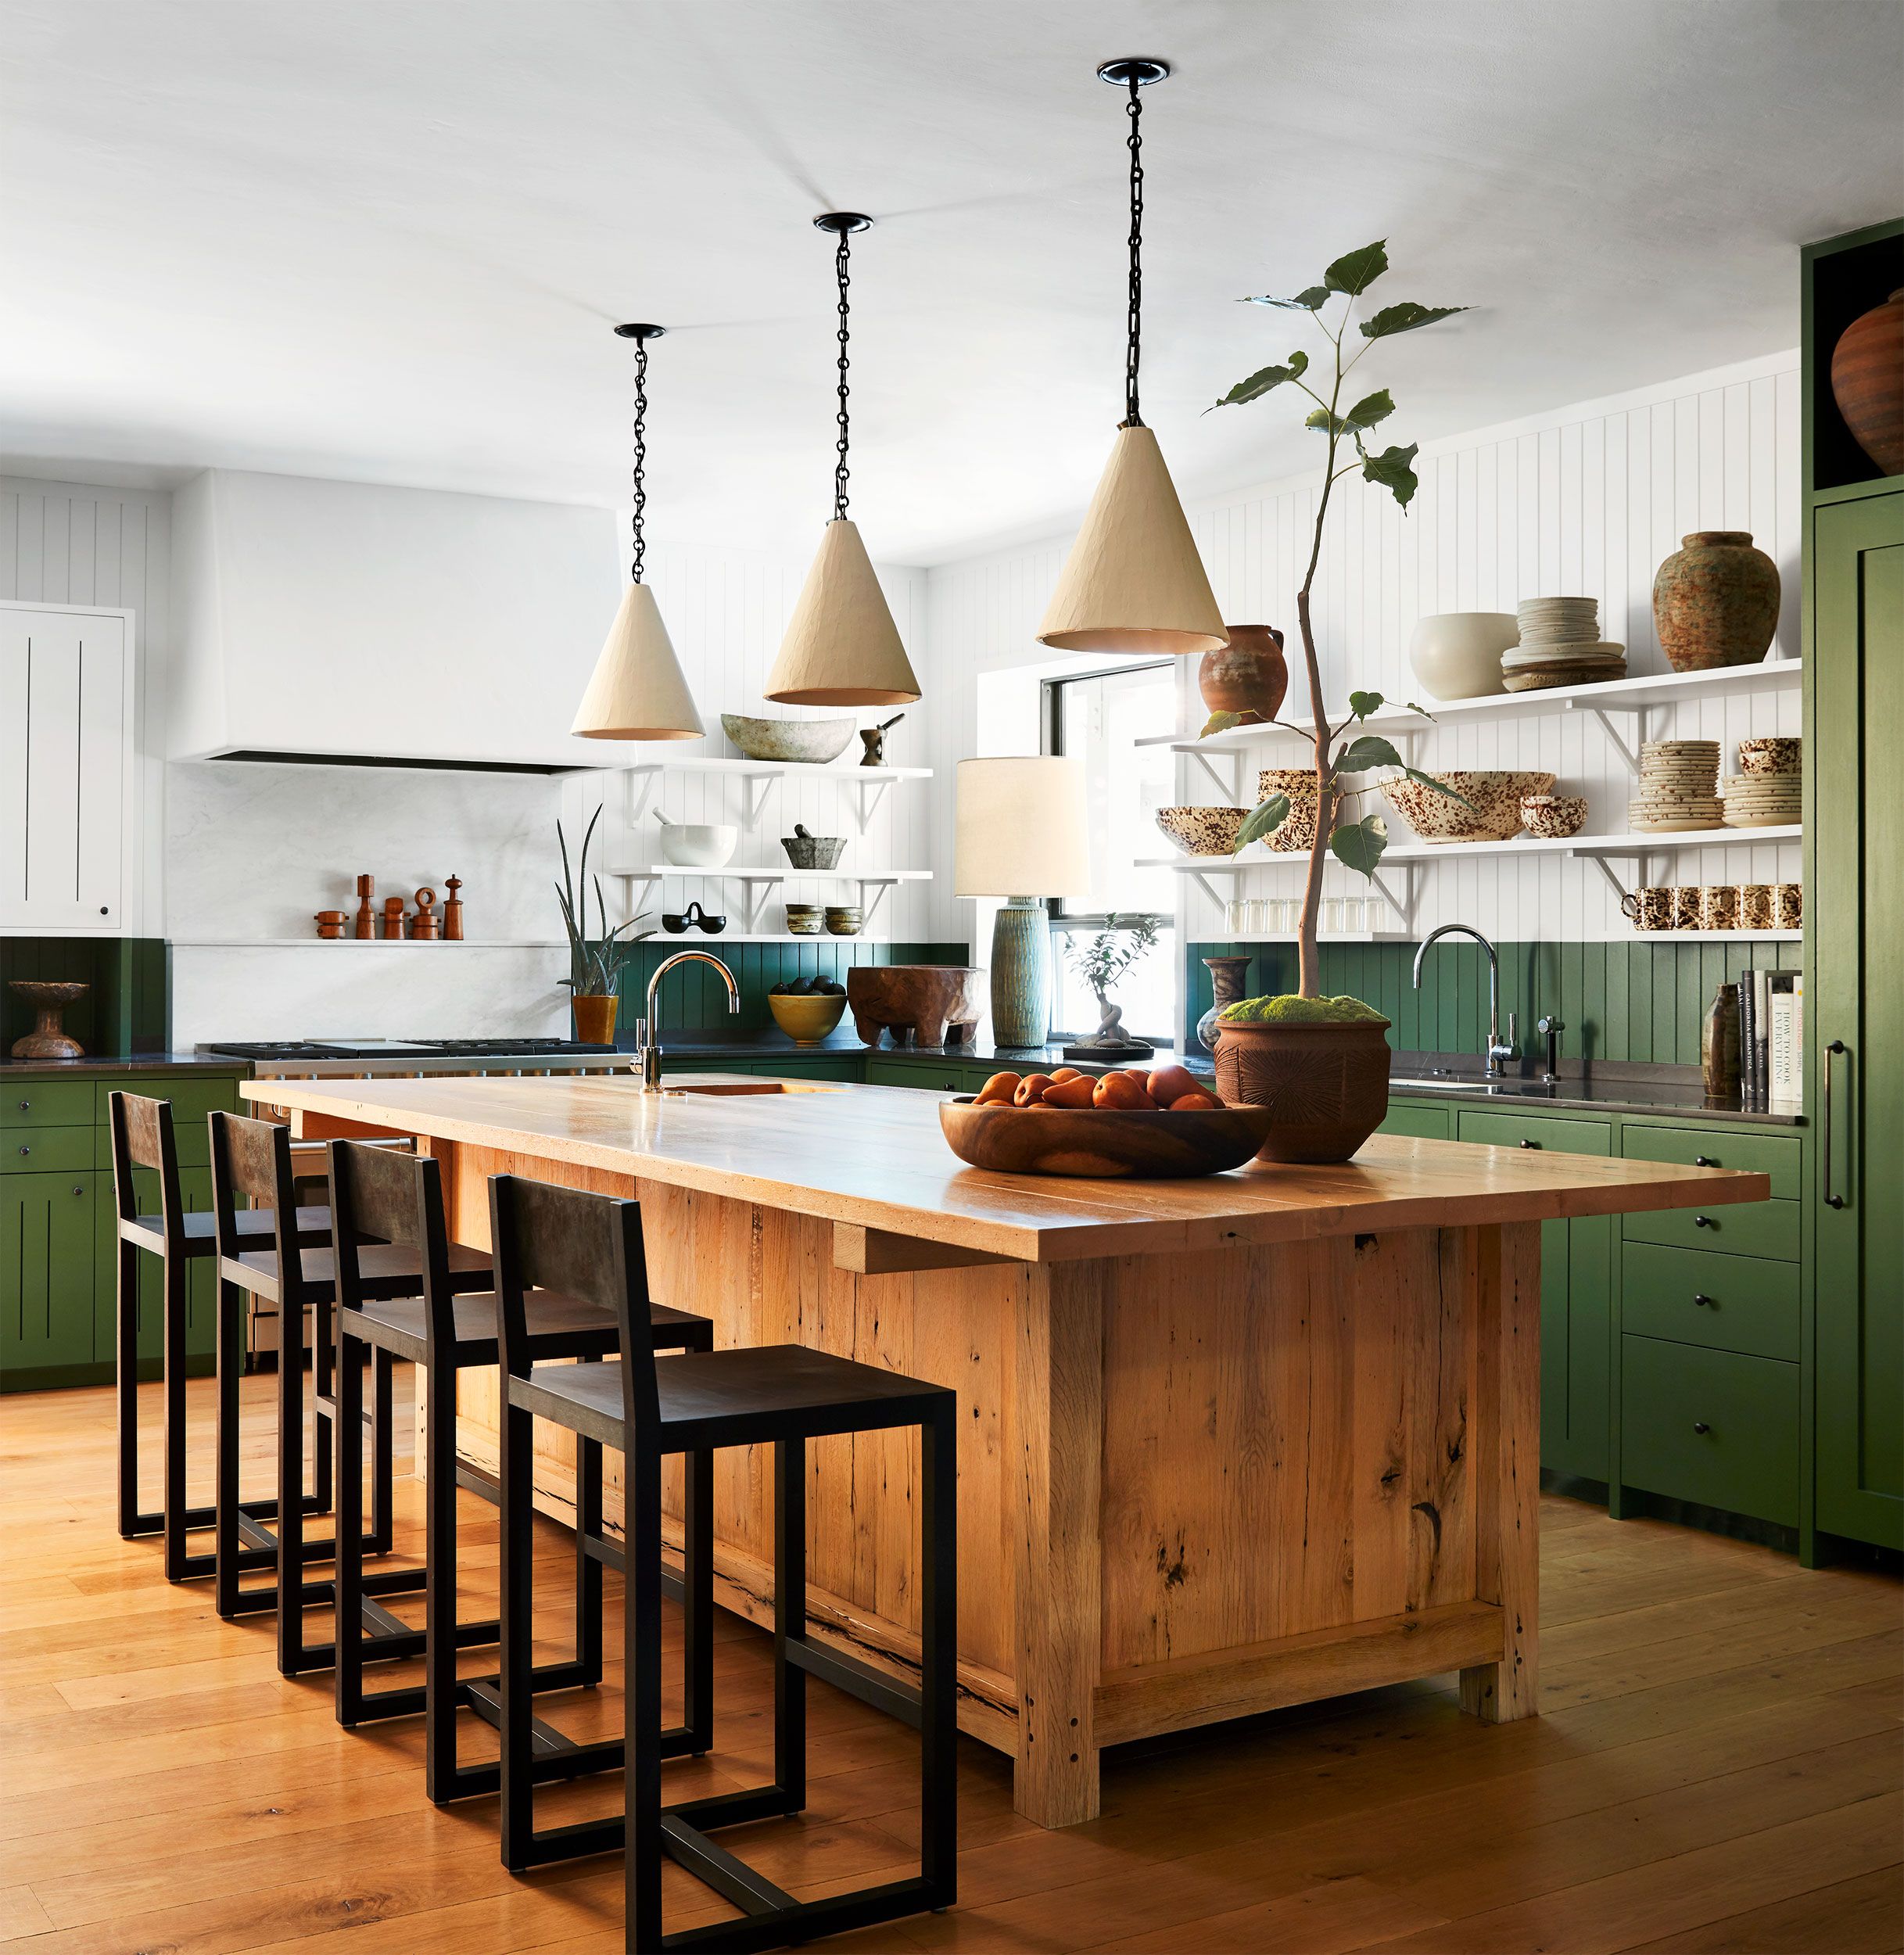 20 Stunning Farmhouse Kitchen Ideas - Decomil